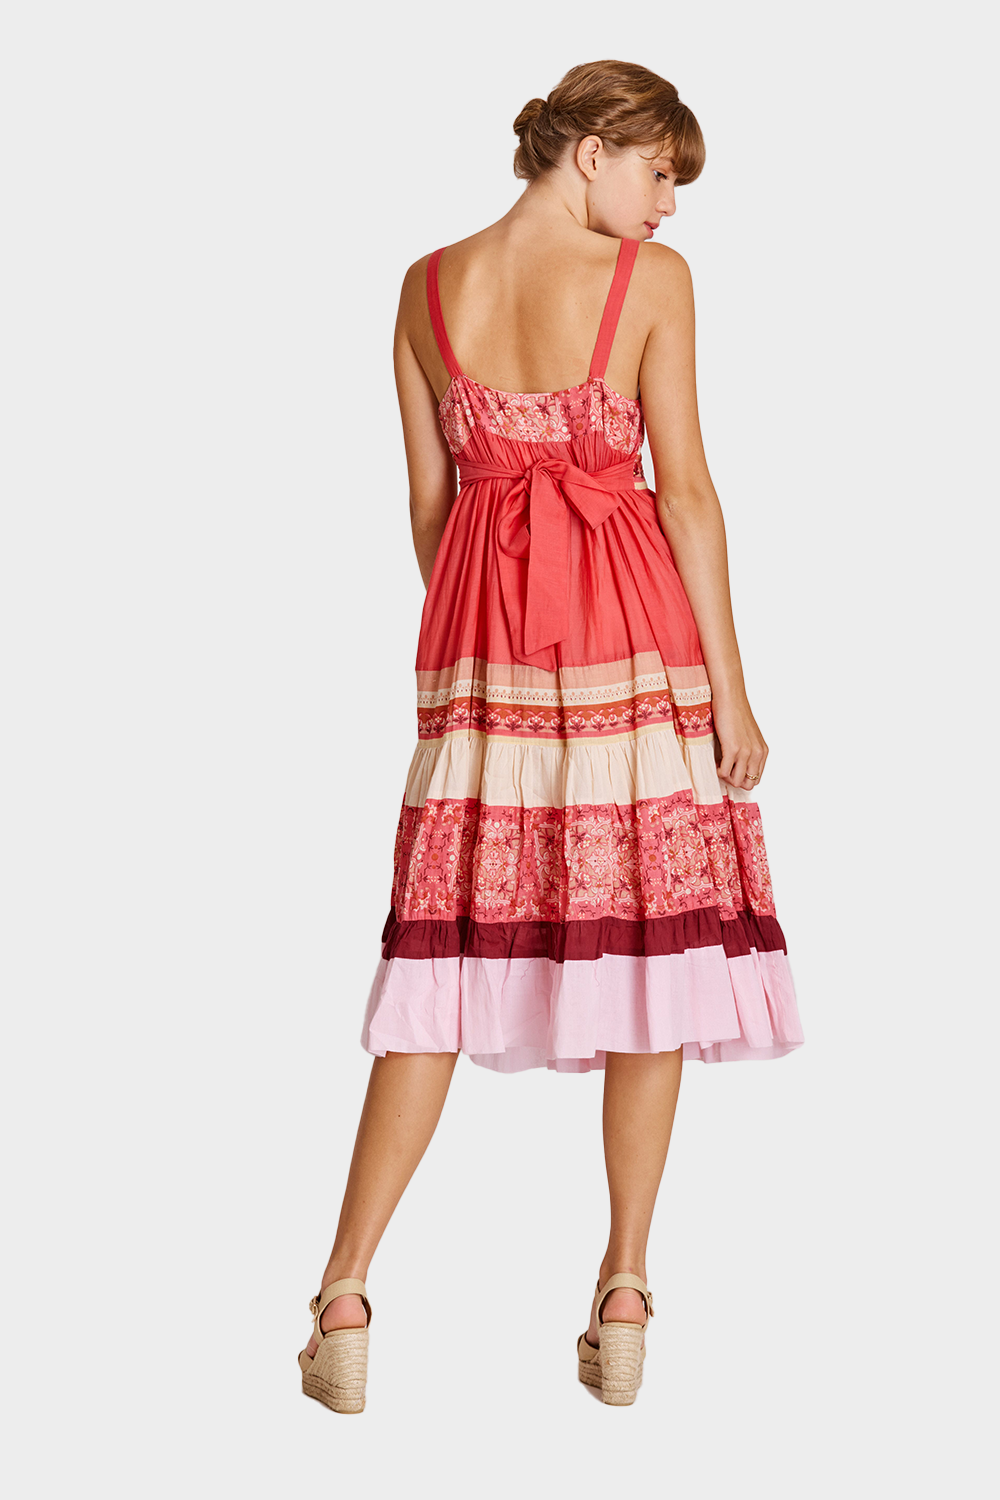 שמלה פרחונית רומנטית לנשים RENE DERHY Vendome online | ונדום .